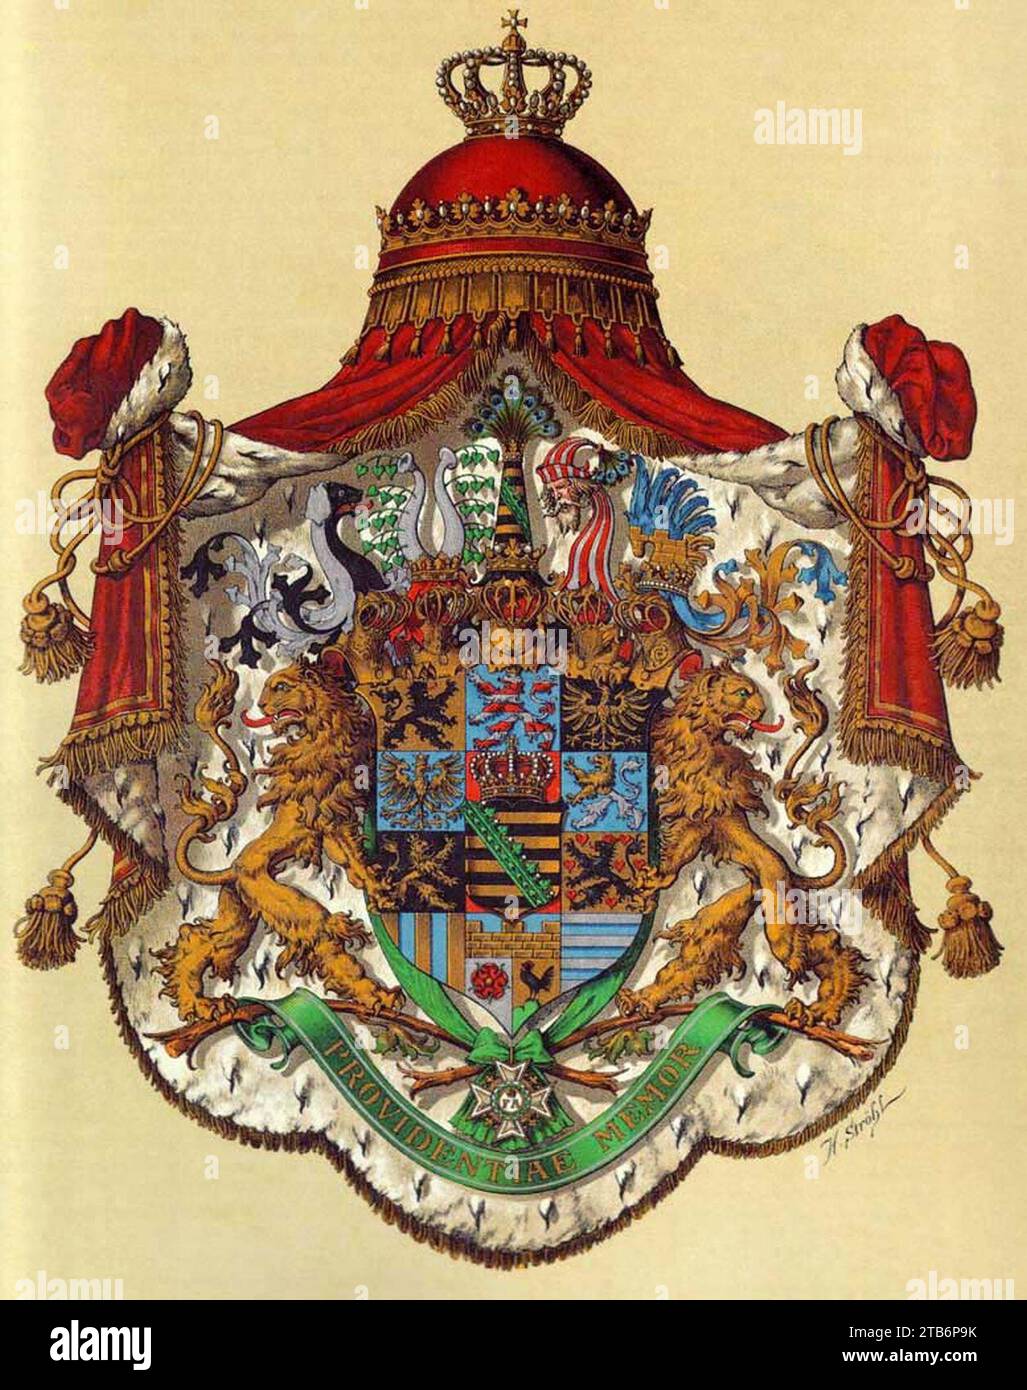 Wappen Deutsches Reich - Königreich Sachsen (Grosses). Stock Photo